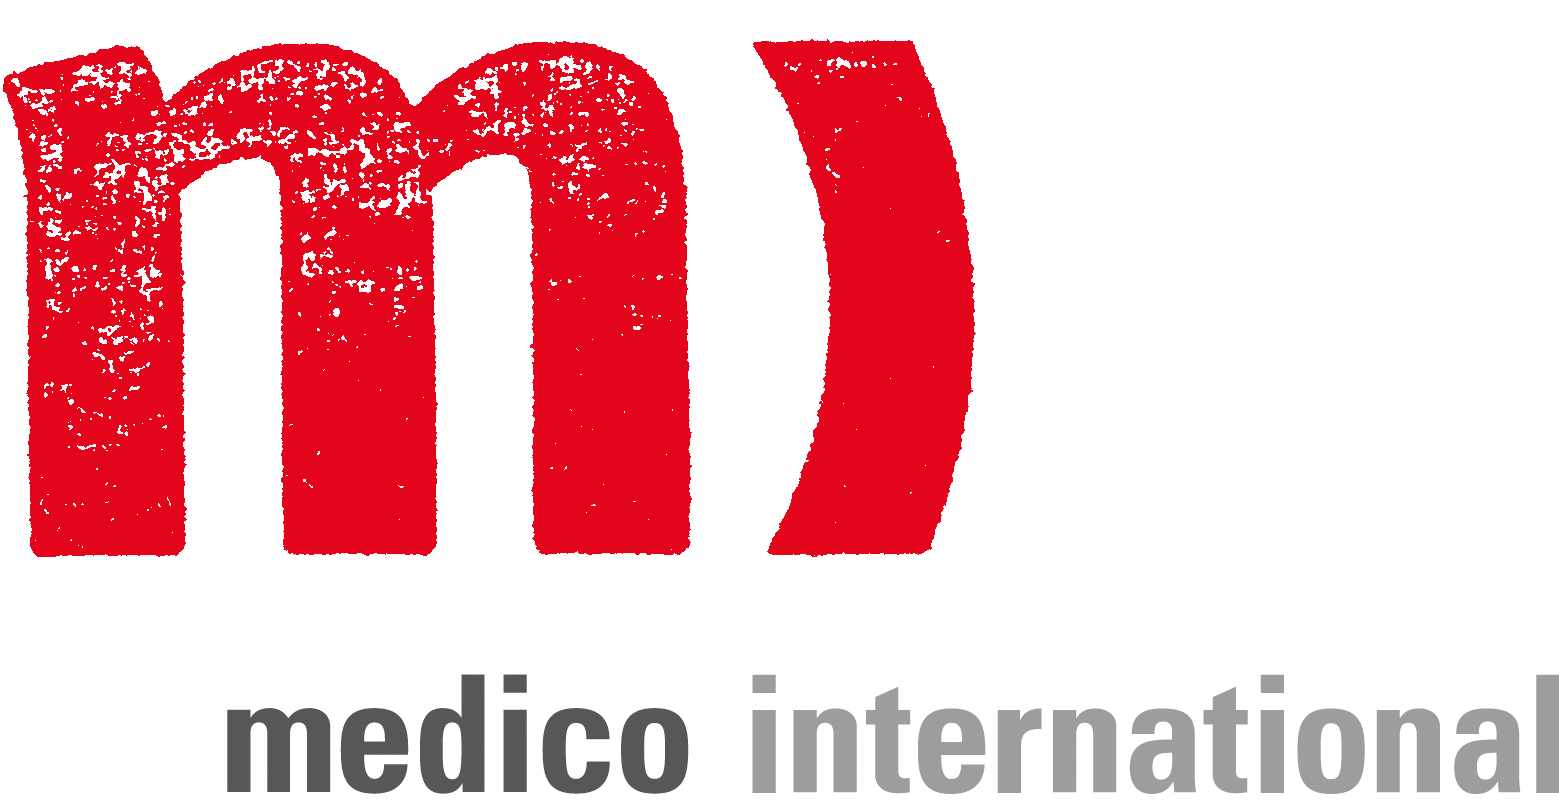 medico international Logo und Wortmarke